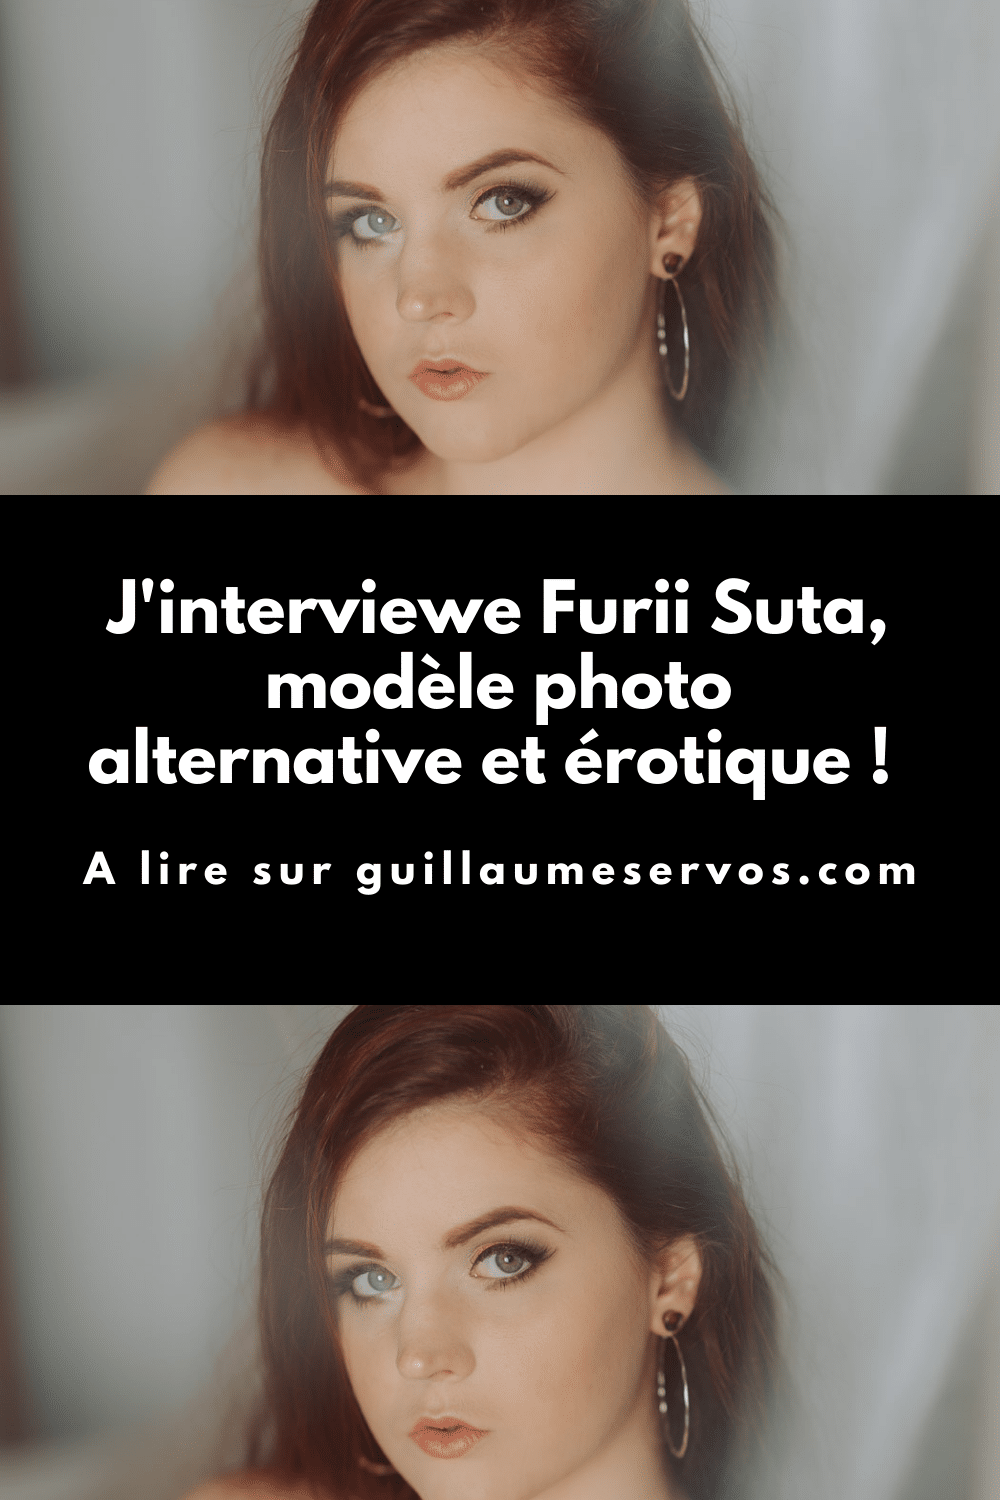 Découvre mon interview avec Furii Suta, modèle photo alternative et érotique. Au menu : son rapport à la photographie, aux réseaux sociaux et au voyage.